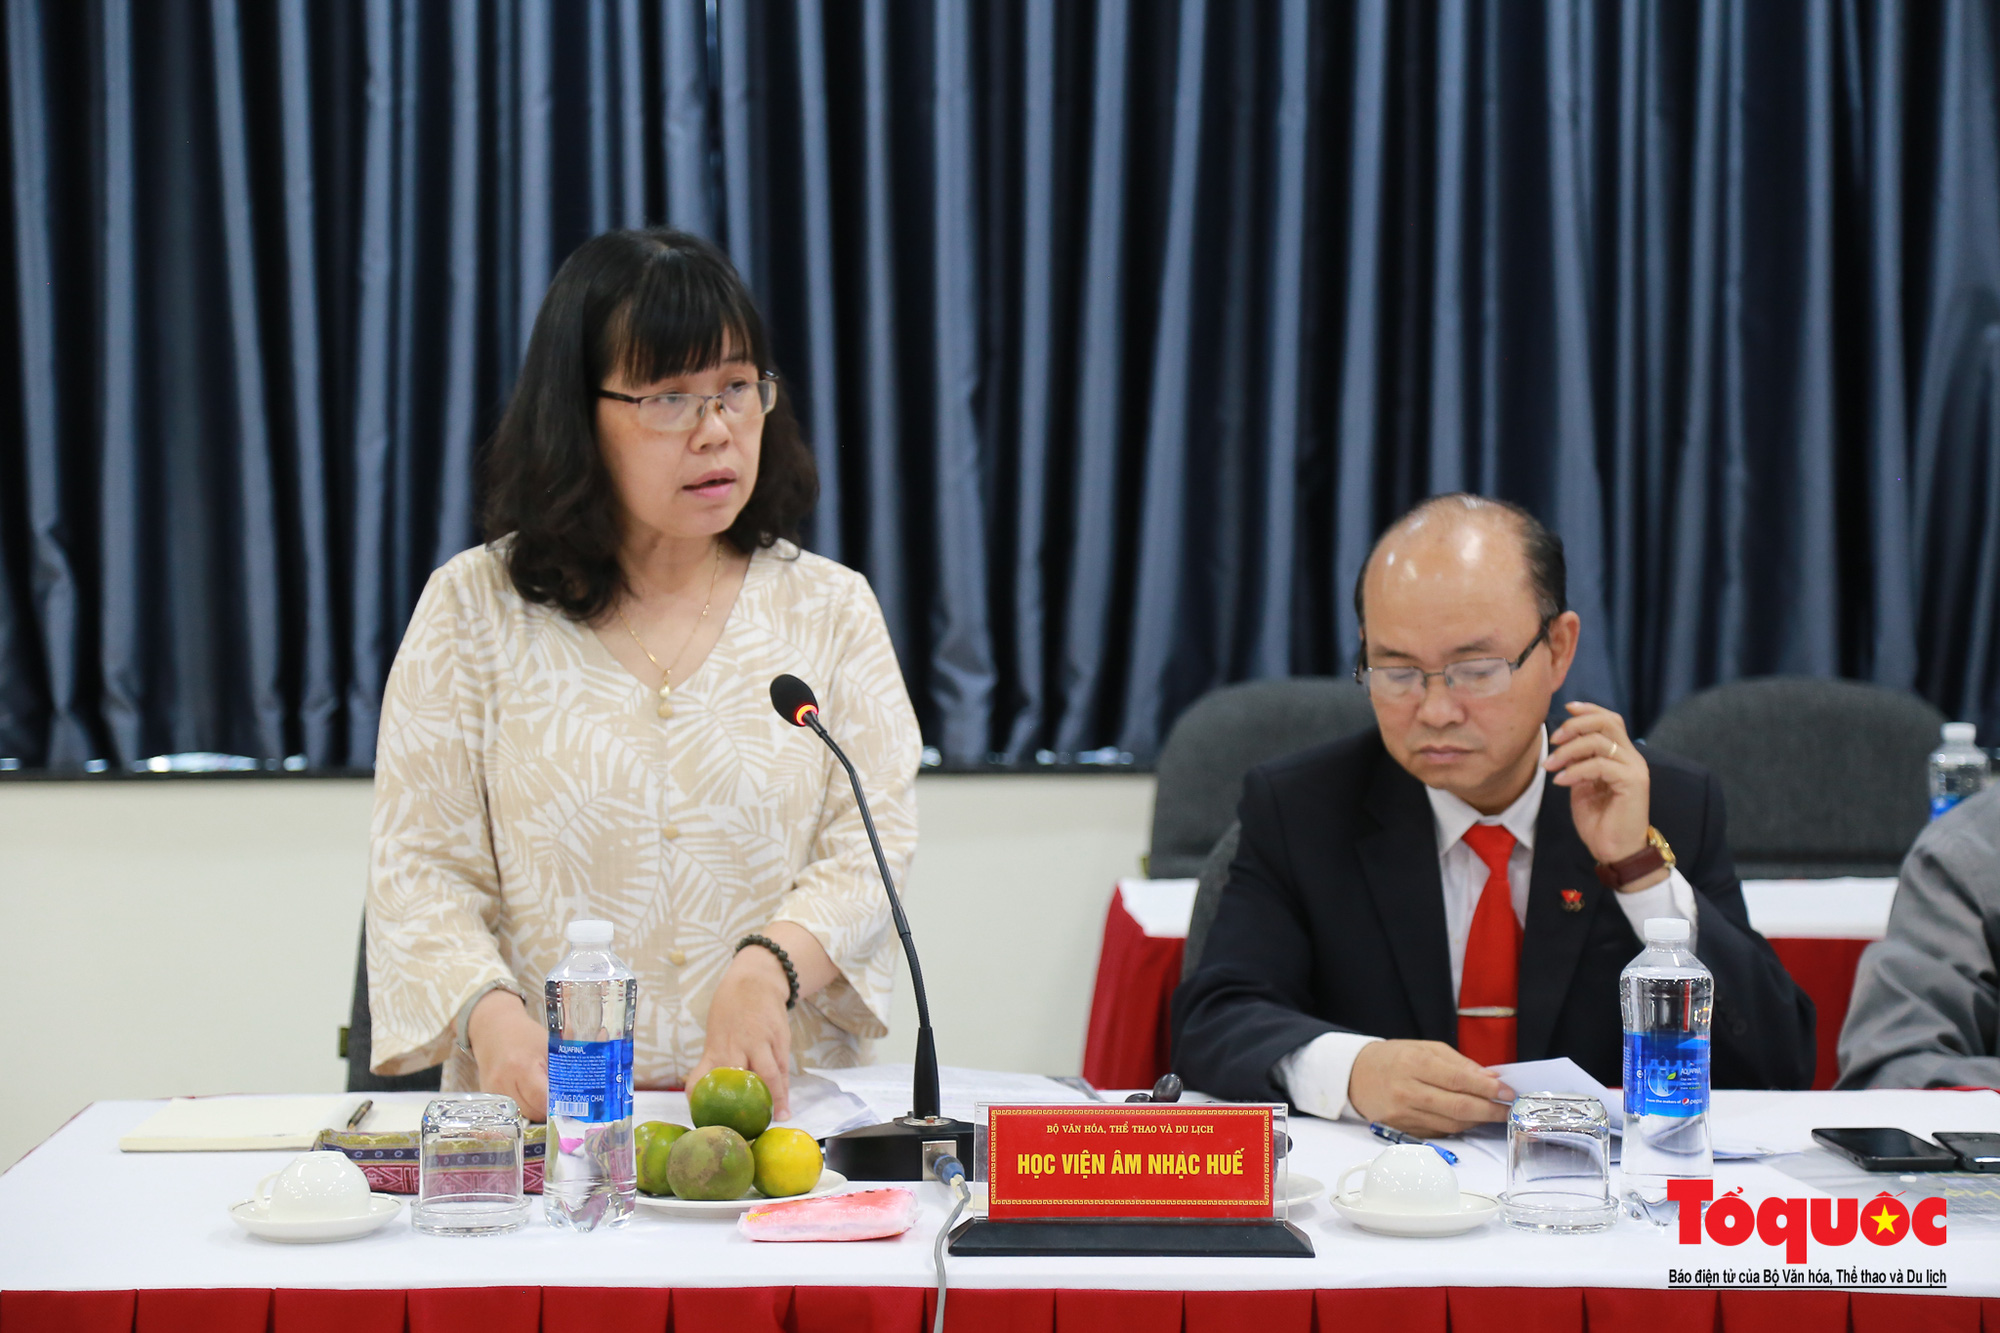 Bộ trưởng Nguyễn Văn Hùng làm việc với các đơn vị trực thuộc Bộ tại Thừa Thiên Huế - Ảnh 2.